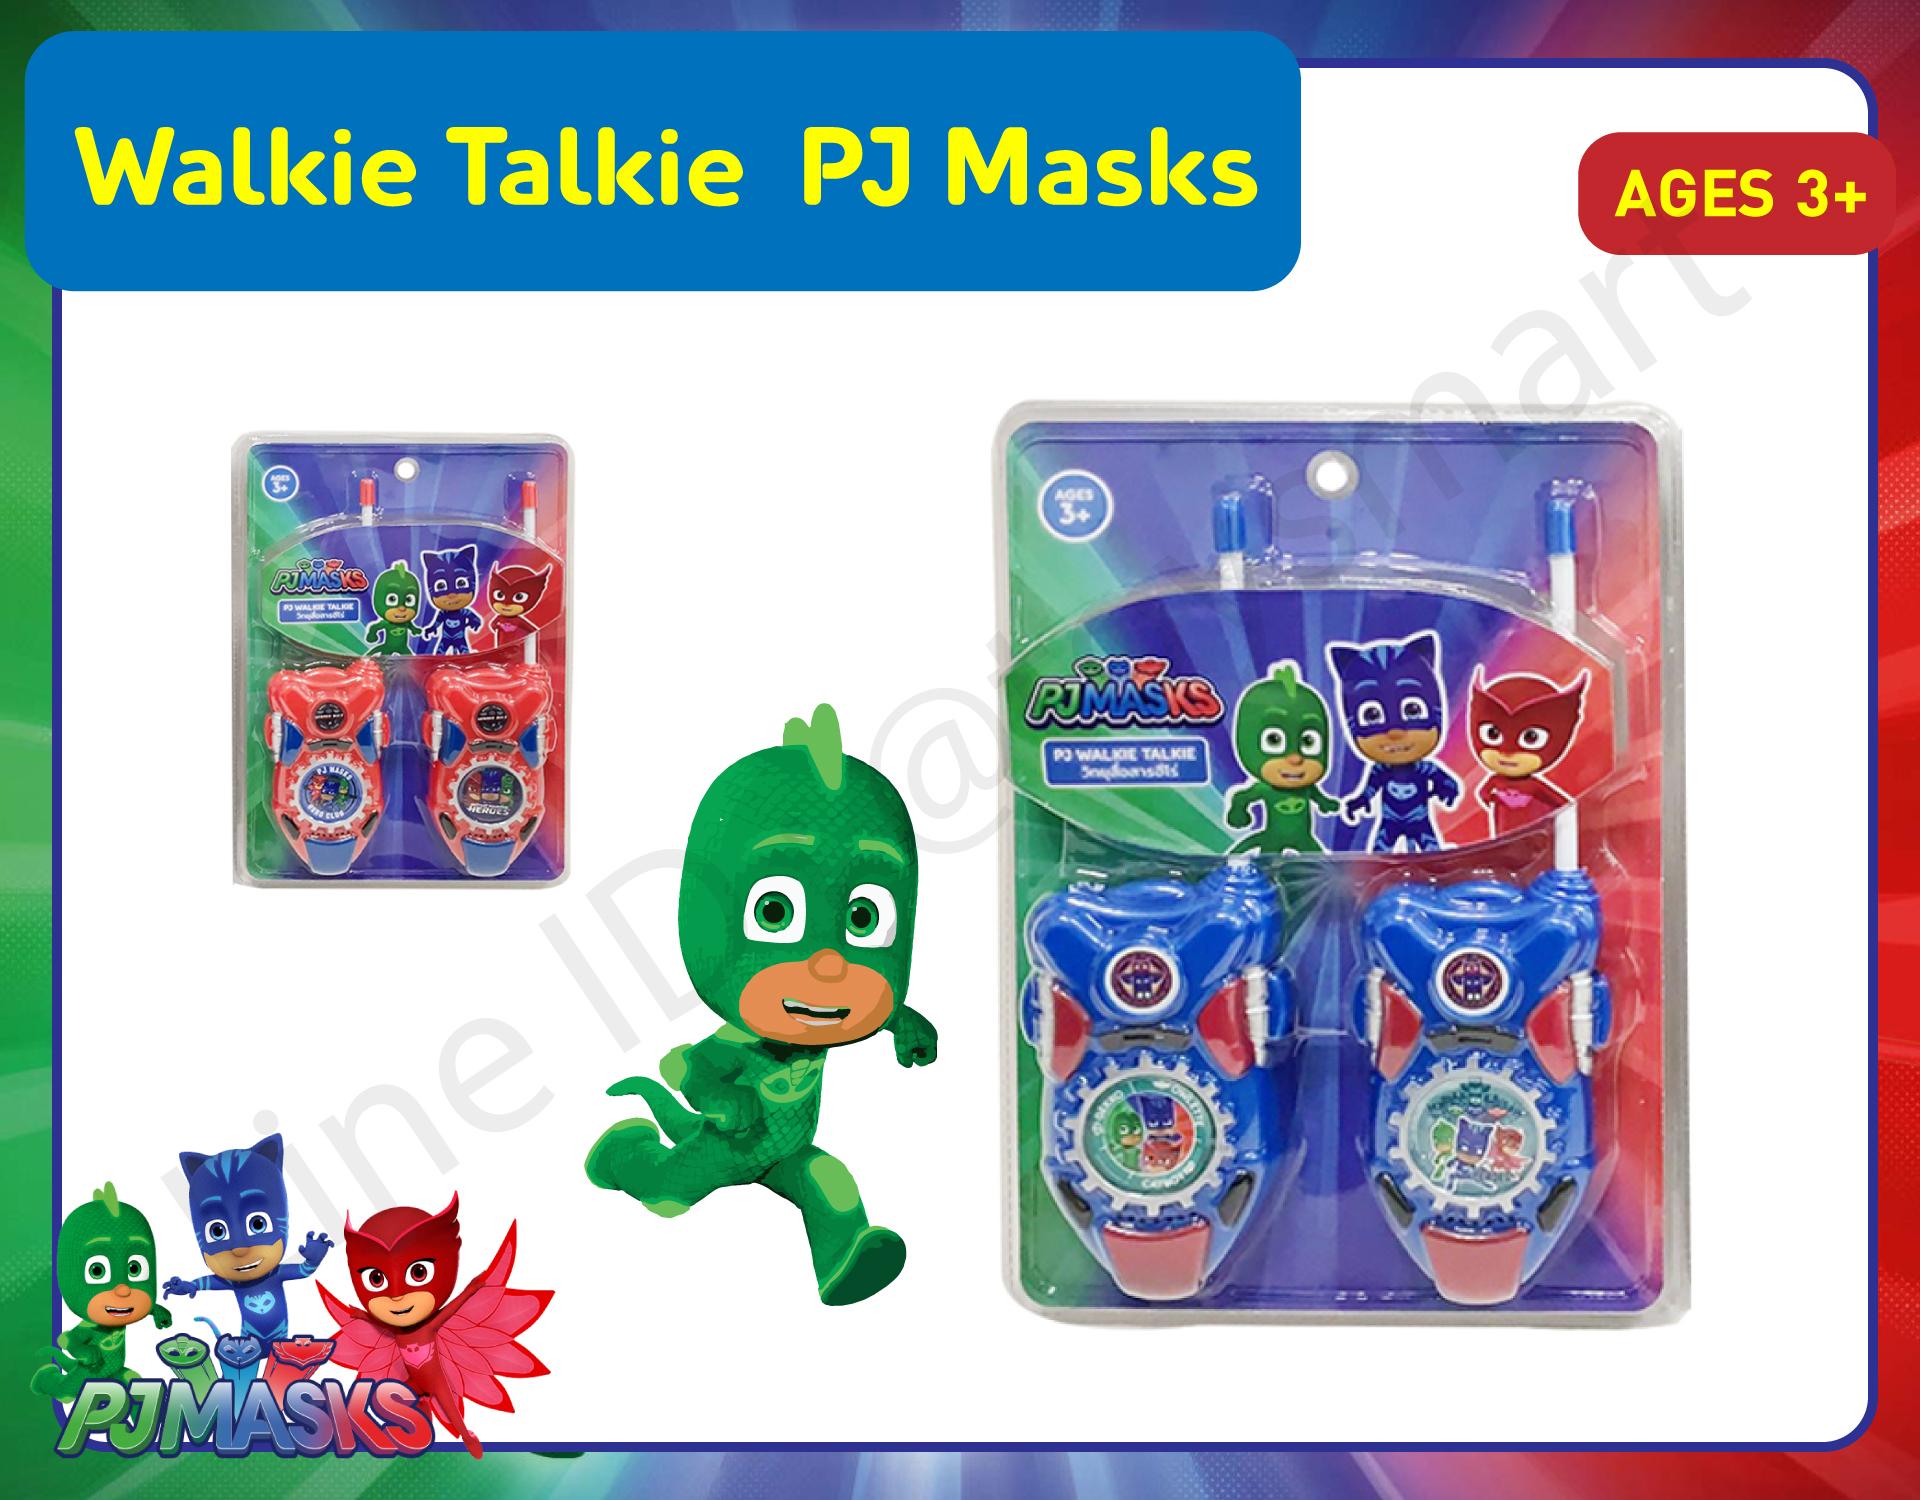 Walkie Talkie PJ Masks วิทยุสื่อสารสำหรับเด็ก วิทยุของเล่นเด็ก ฮีโร่รัติกาล สี แดง